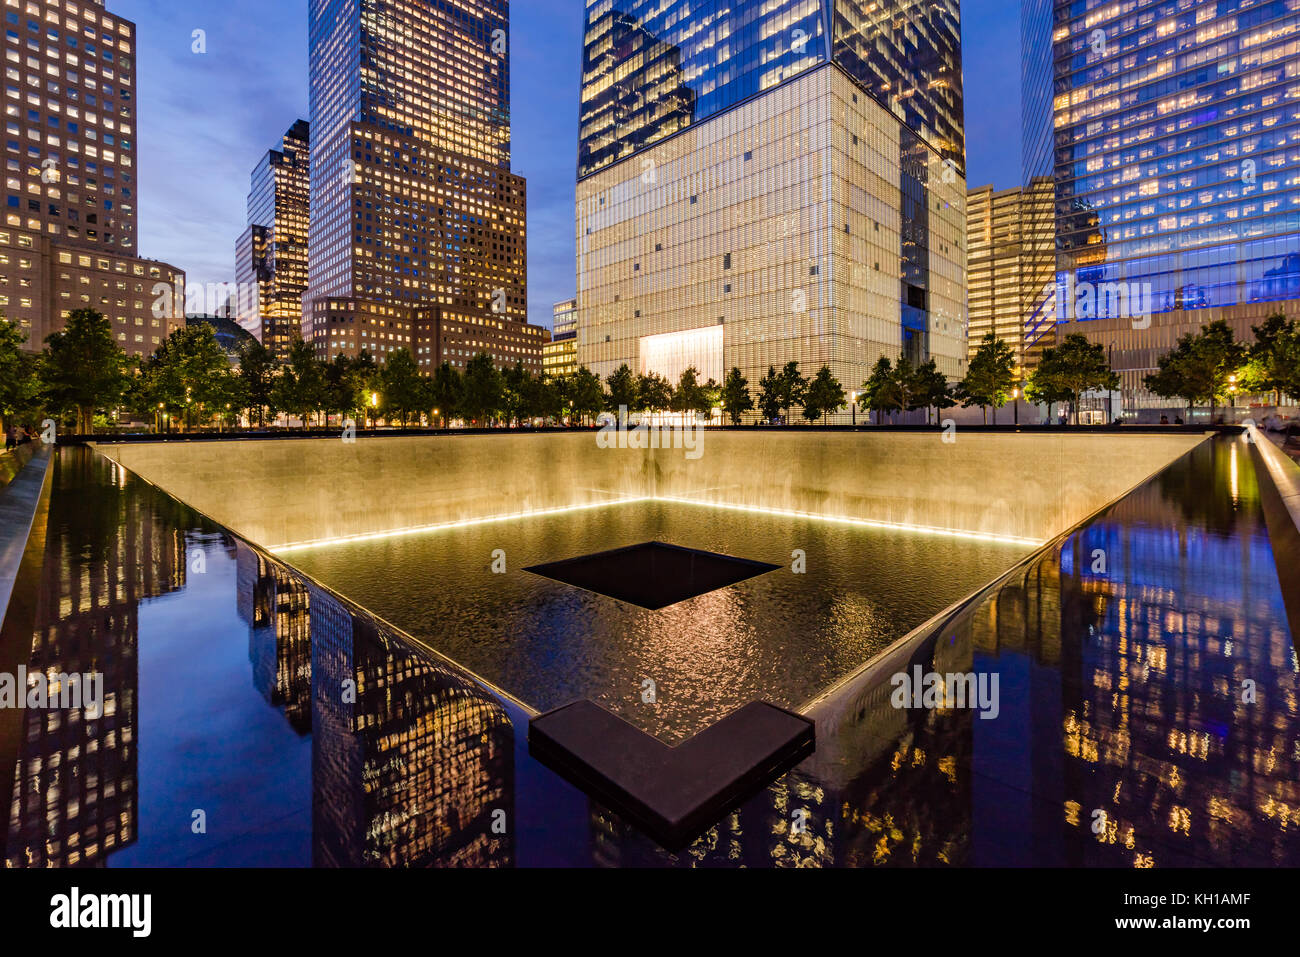 La piscina reflectante del Norte iluminado al atardecer con vista de One World Trade Center. Lower Manhattan, 9/11 Memorial & Museum, Nueva York Foto de stock